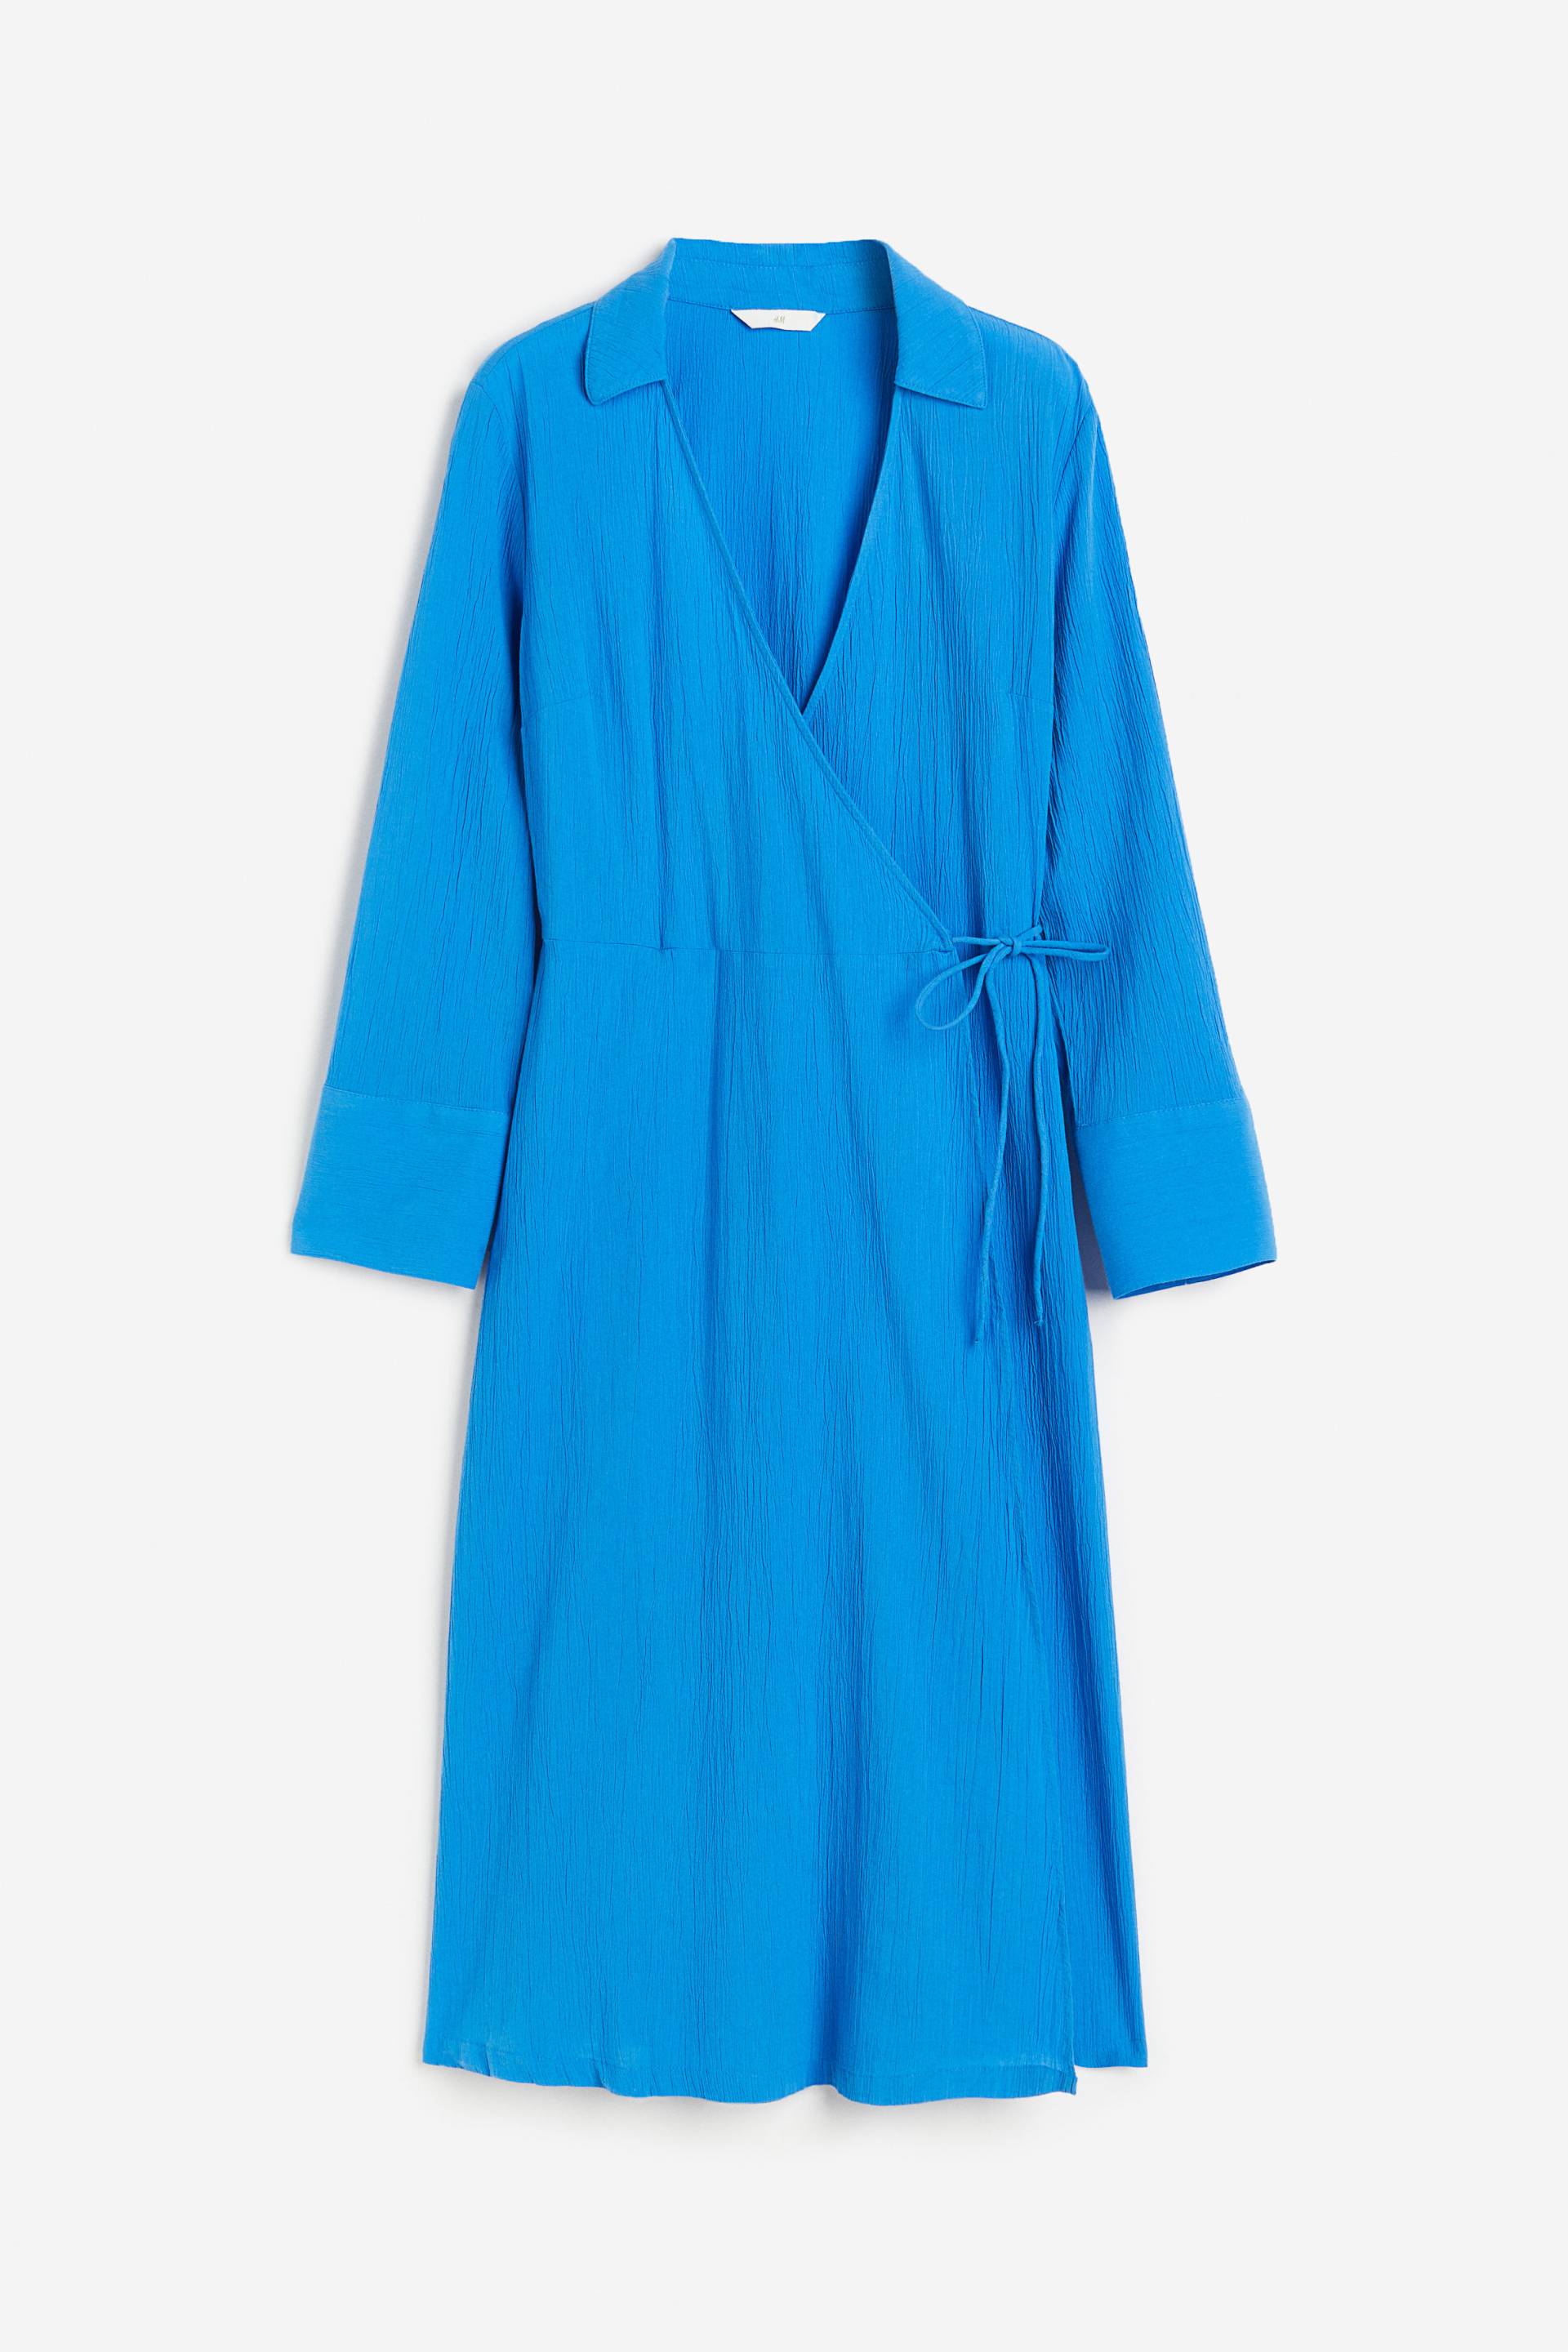 H&M Blusenkleid im Wickelschnitt Blau, Alltagskleider in Größe XS. Farbe: Blue von H&M